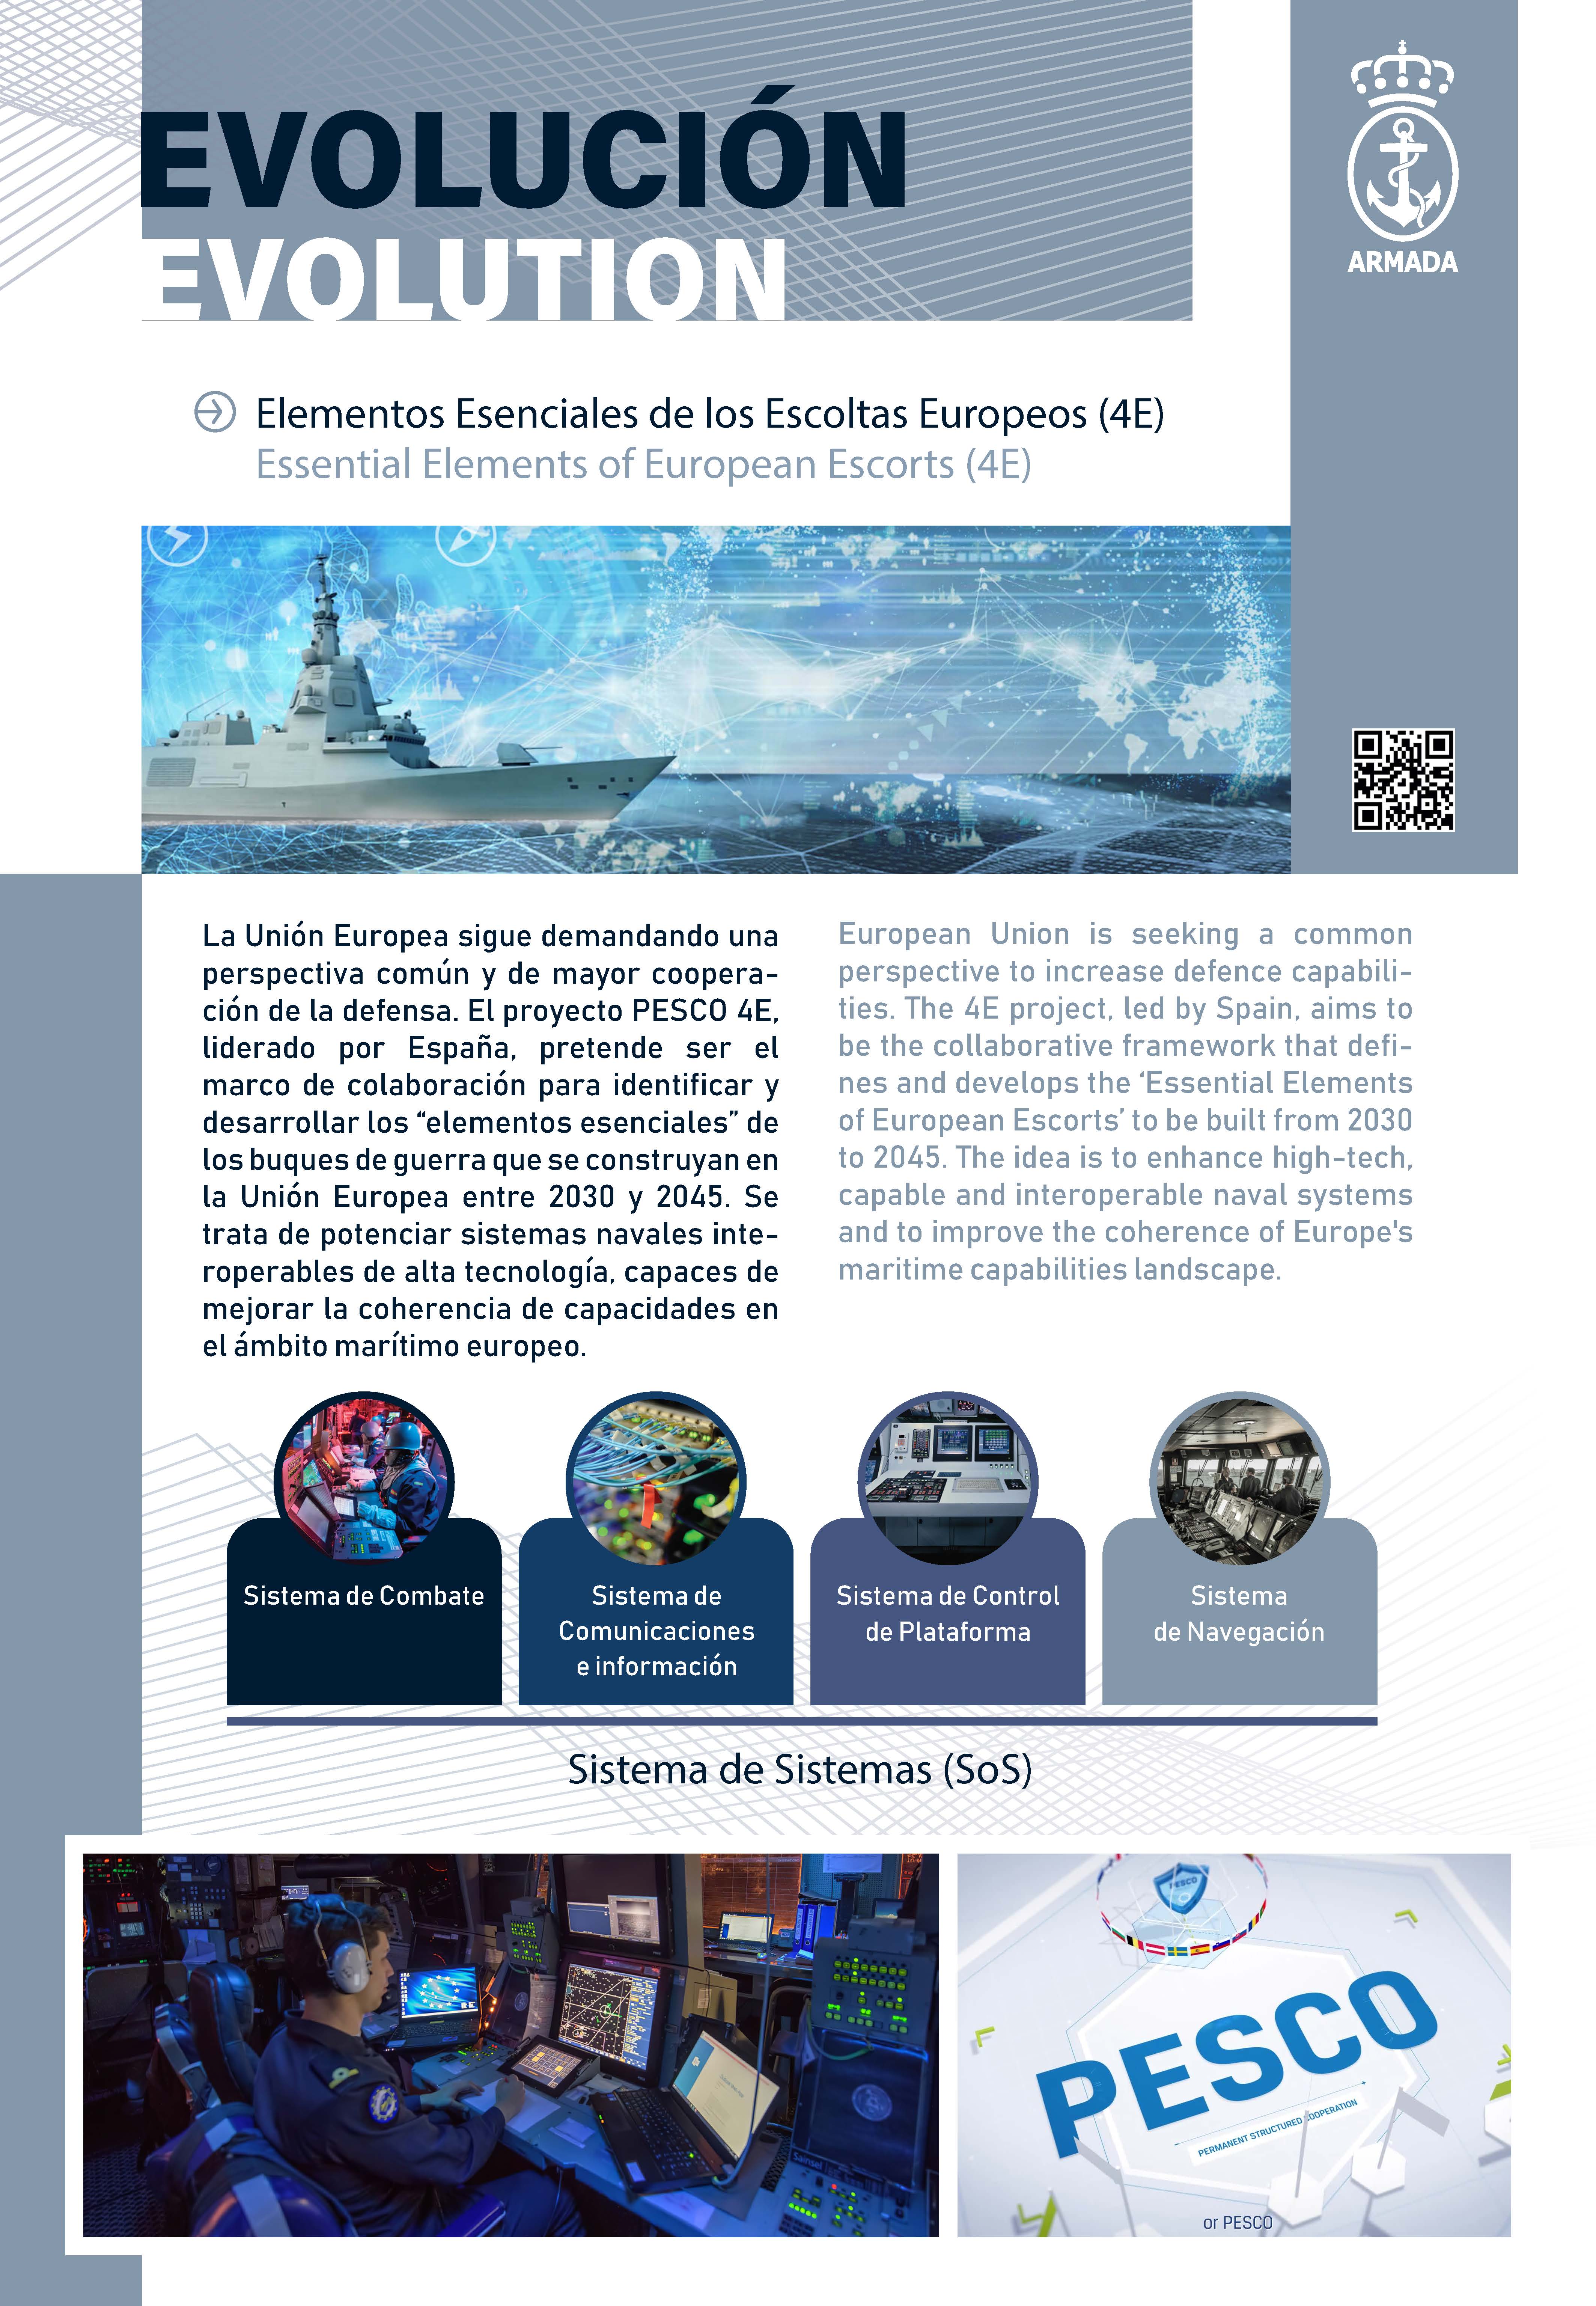 Elementos Esenciales de los Escoltas Europeos (4E)